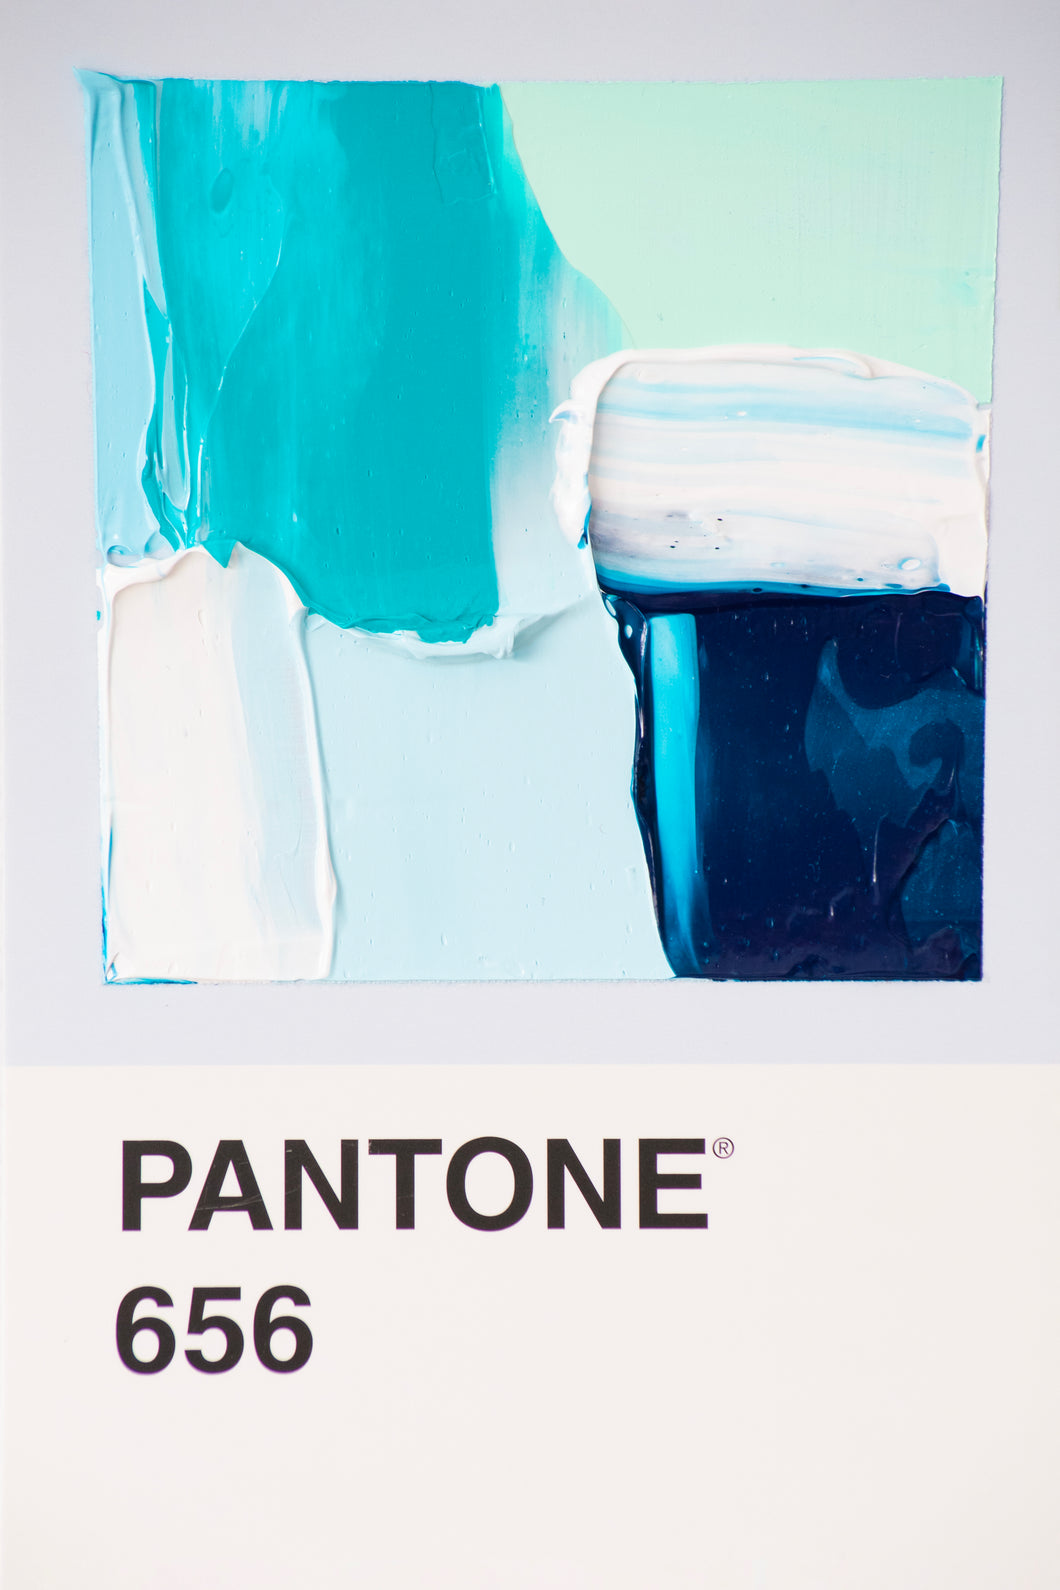 Pantone 656